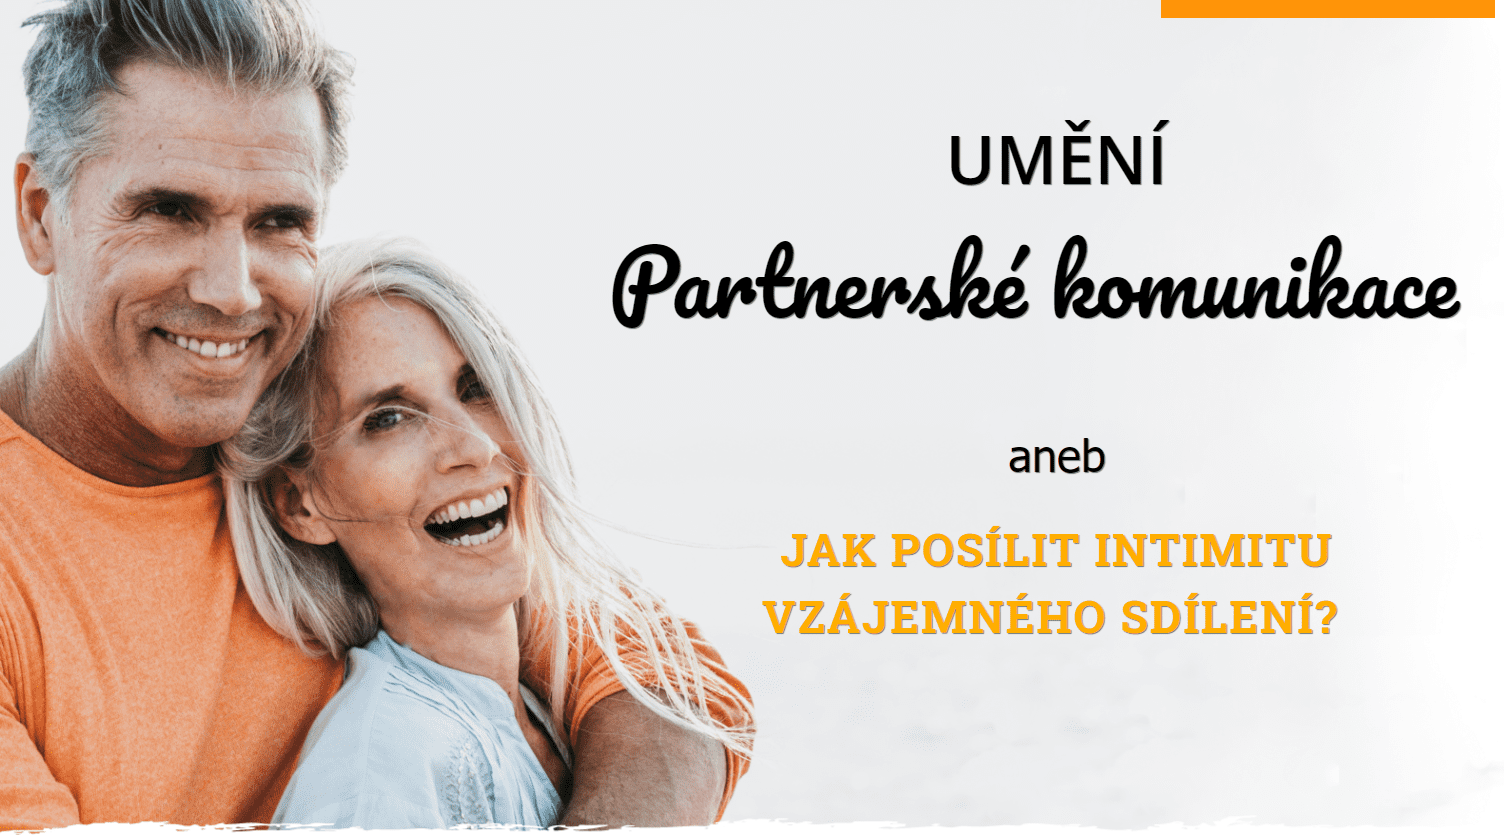 Partnerská komunikace - online kurz Umění partnerské komunikce - Pavel Rataj a Honza Vojtko